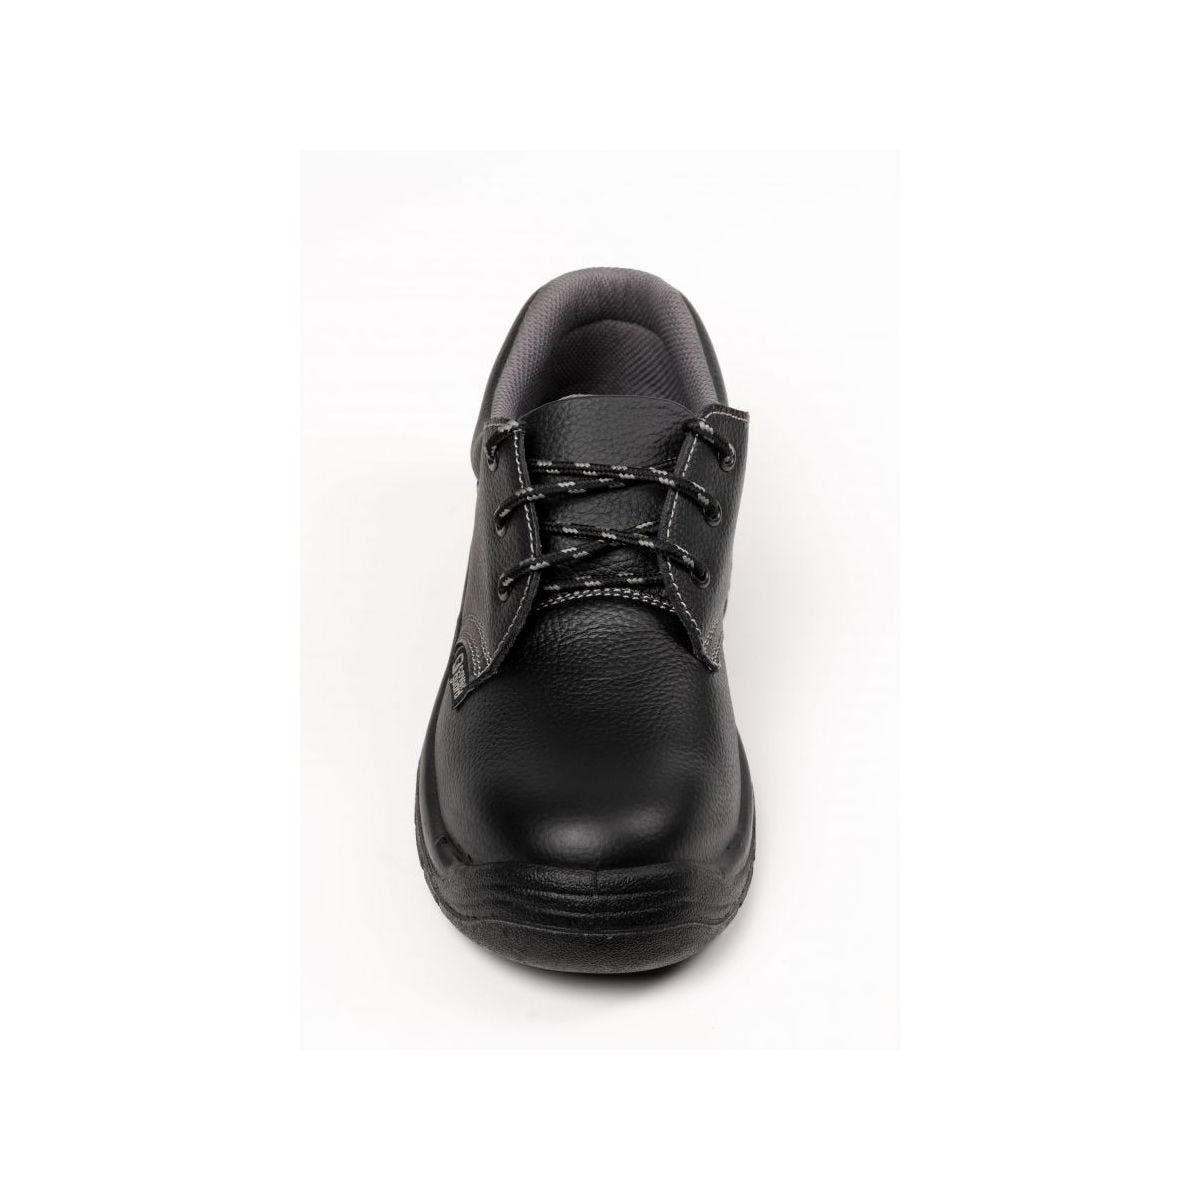 Chaussures de sécurité basses AGATE II S3 Noir - Coverguard - Taille 44 3